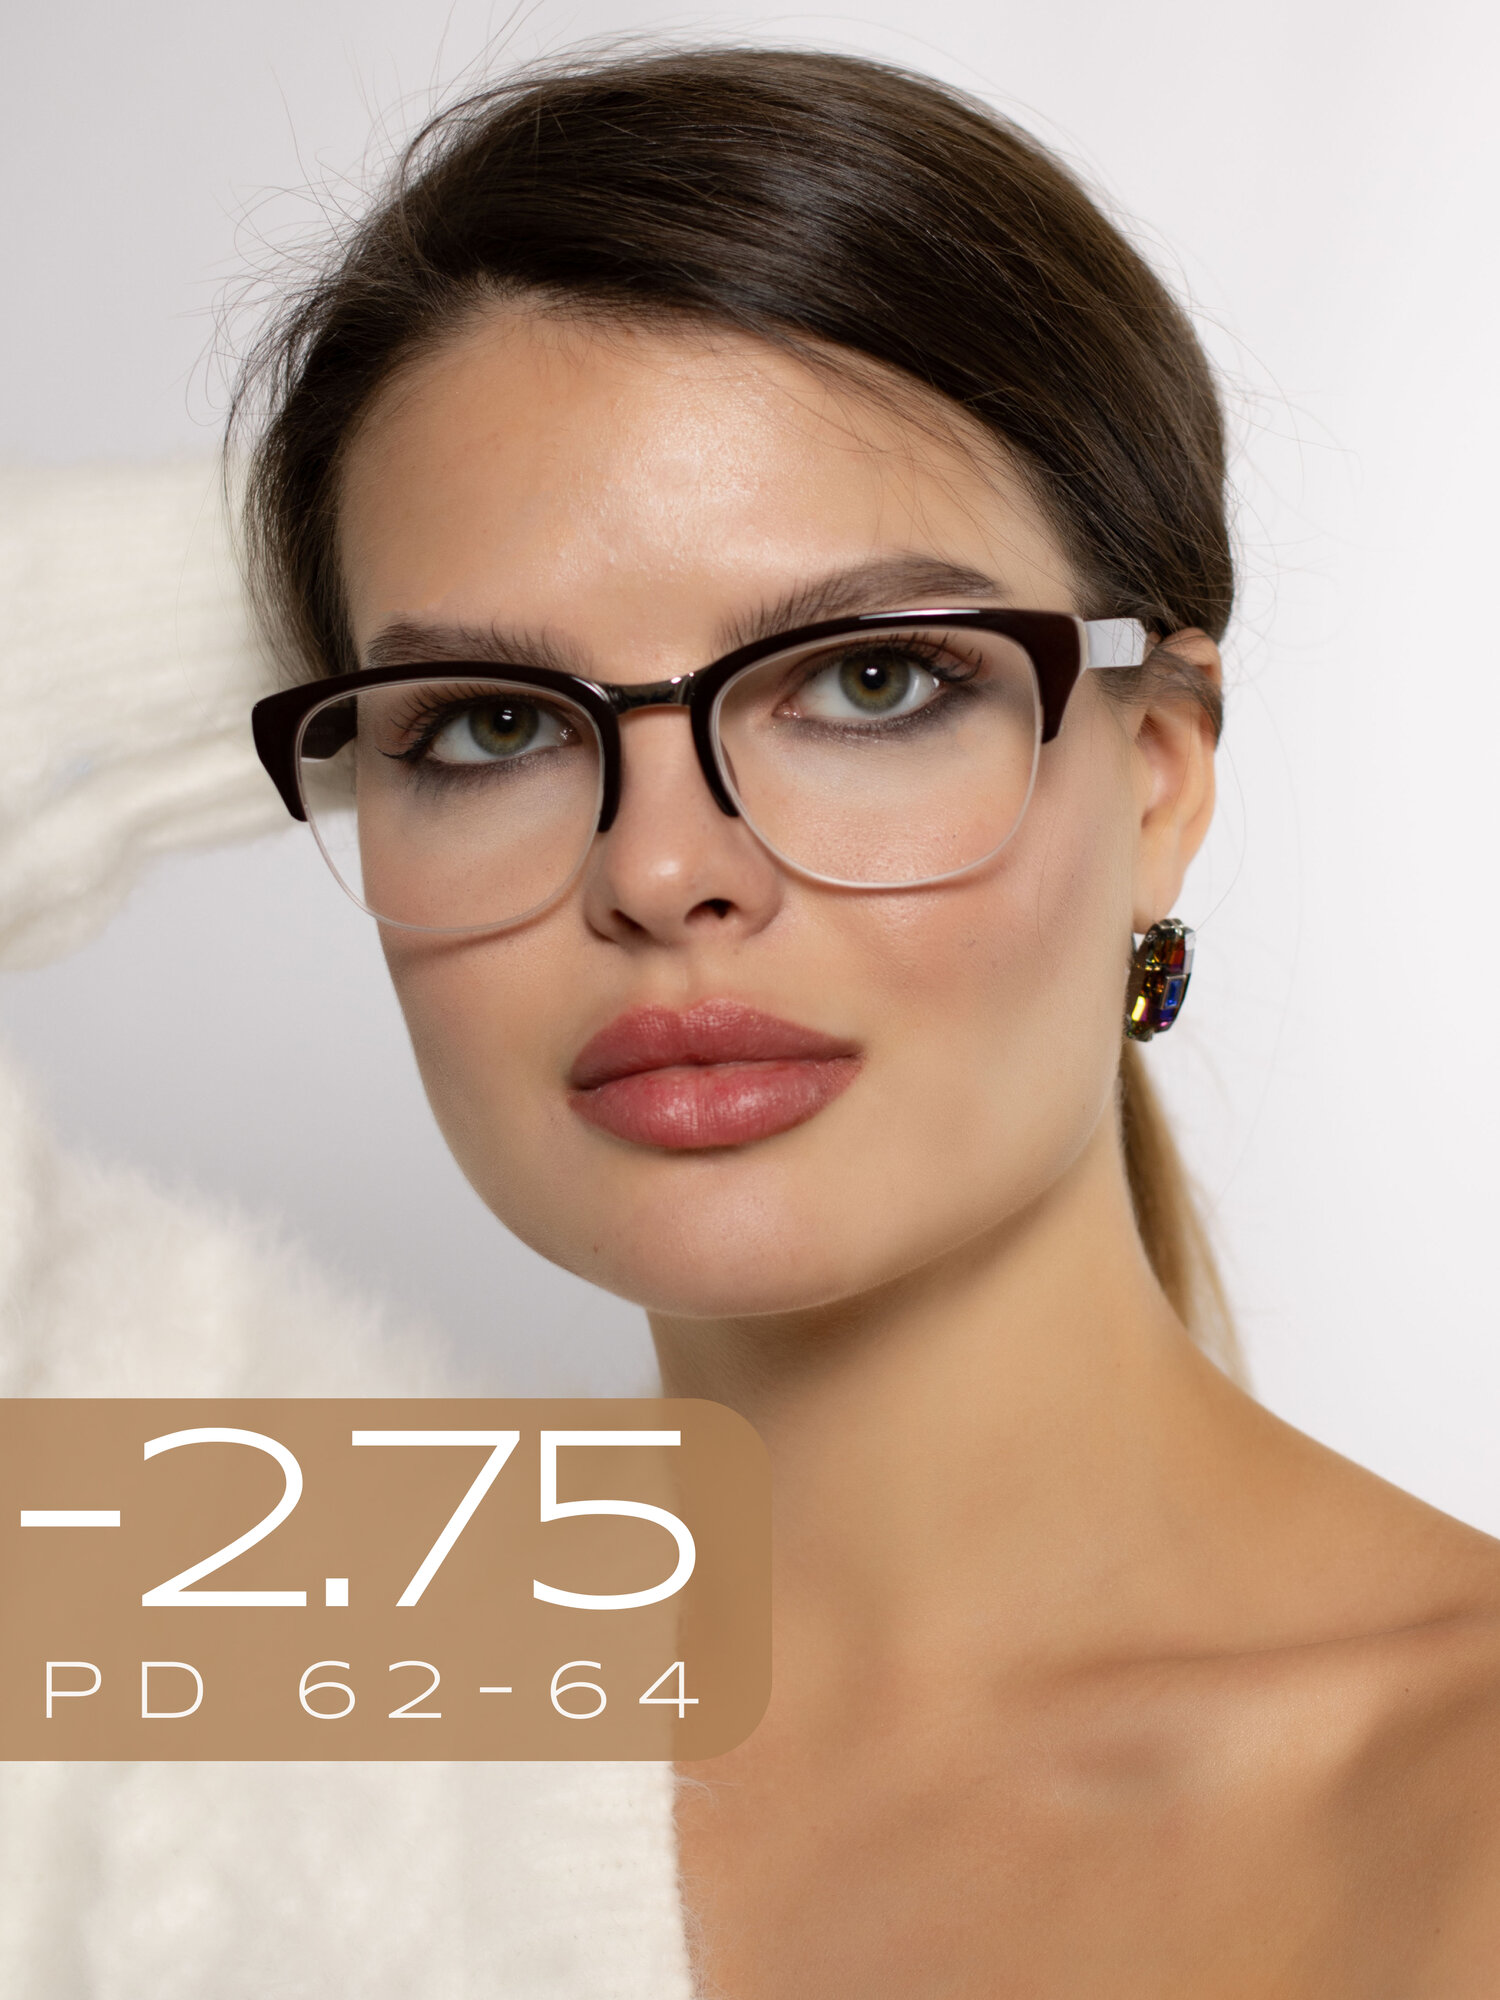 Очки для зрения женские -2,75 / Готовые корригирующие очки с диоптрией -2.75 / Очки для дали